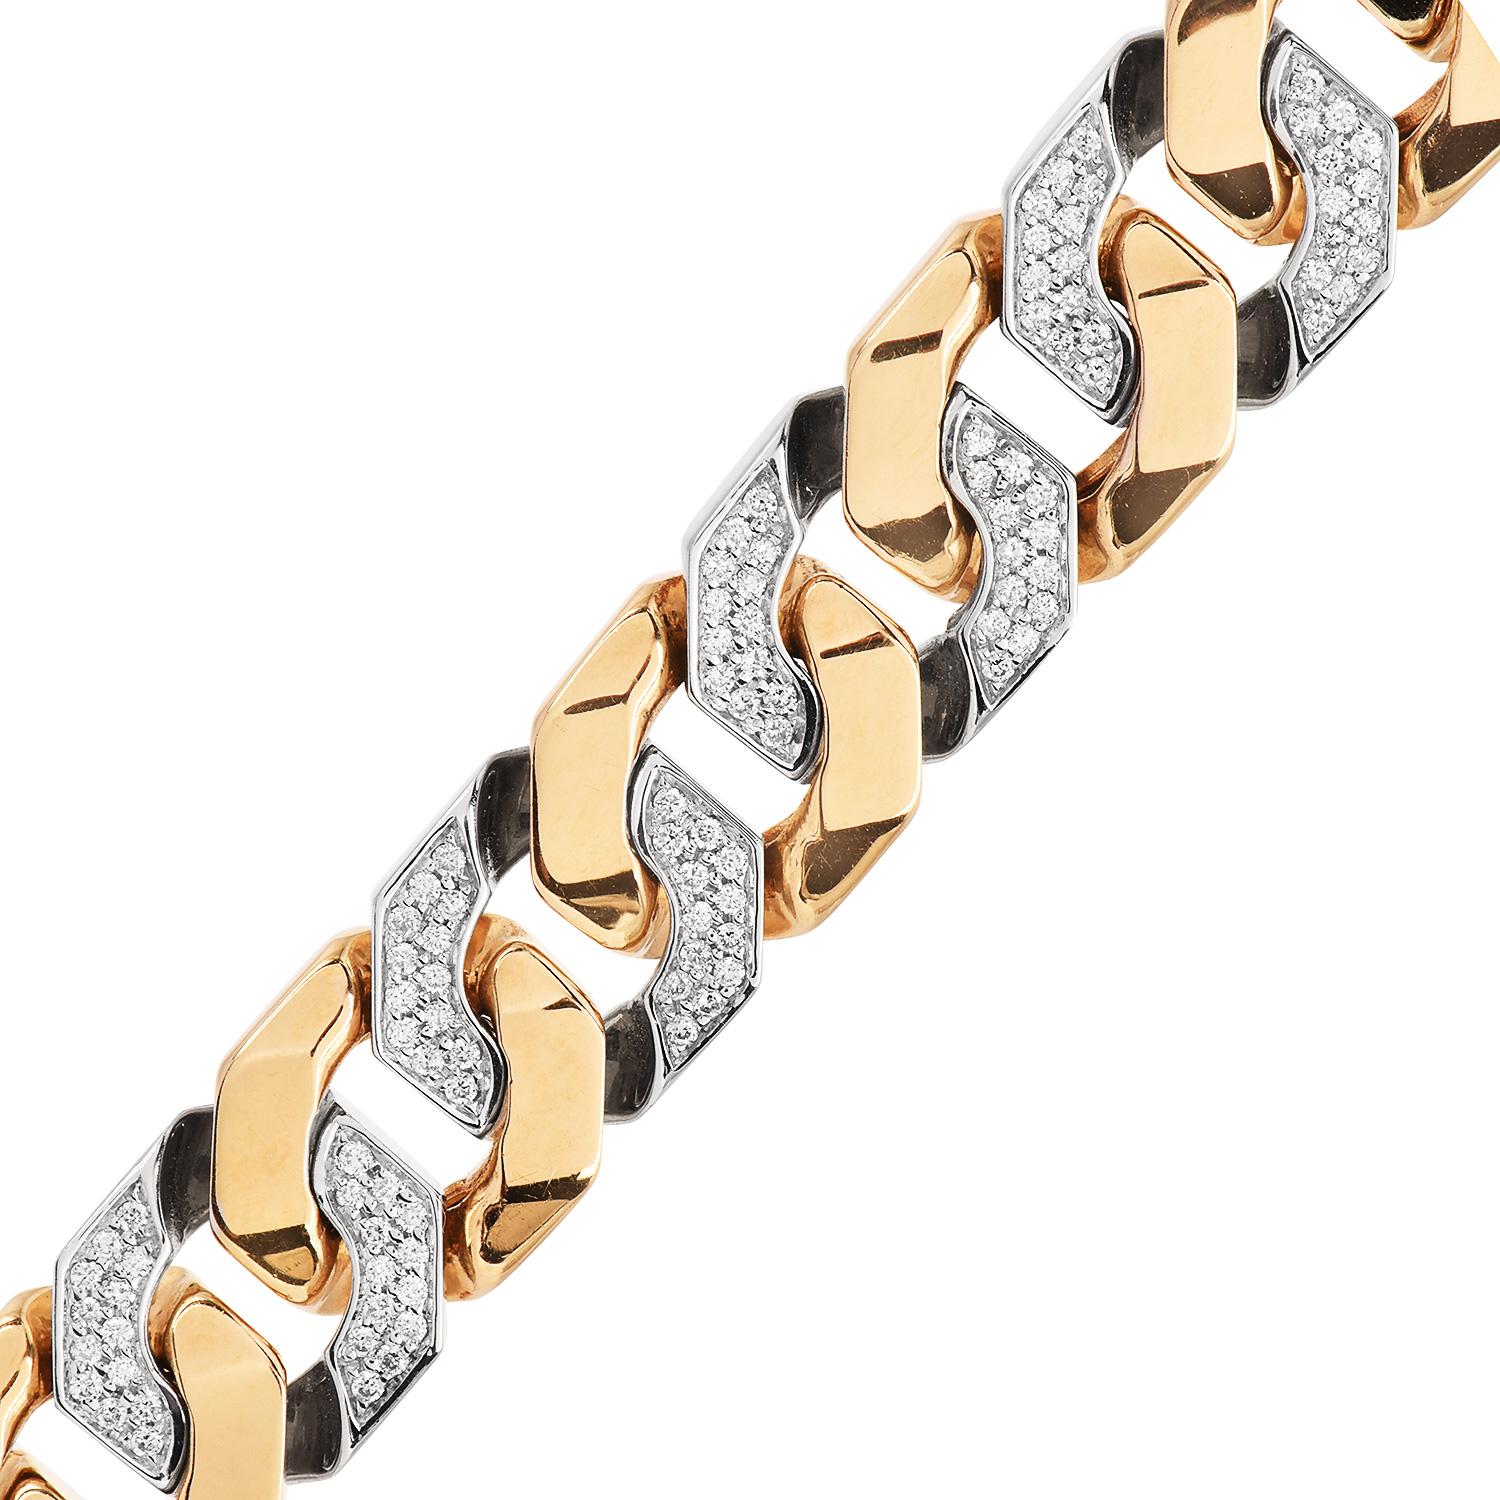 Profitez de cette haute qualité  De grands maillons carrés interconnectés créent le design de ce bracelet au diamant audacieux.

Fabriqué en or jaune 18 carats, ce bracelet mesure environ. 7 pouces x 14 mm de large et est orné de maillons en or